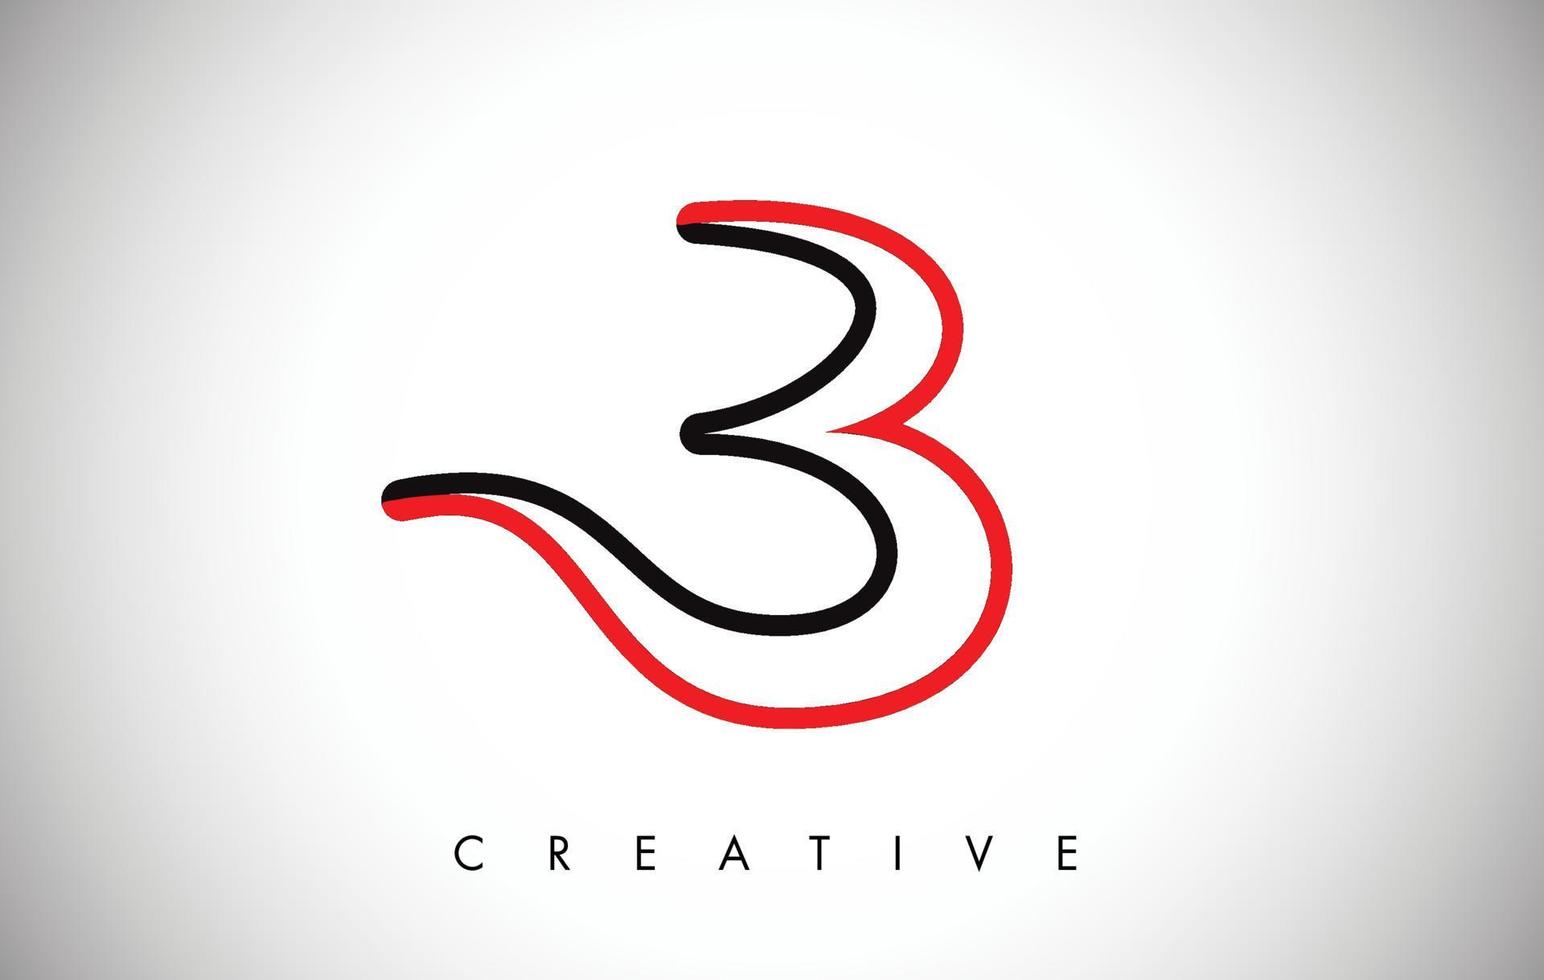 b logotipo de diseño de moda moderno de letra negra roja. Logotipo de icono de letra b con monograma moderno vector